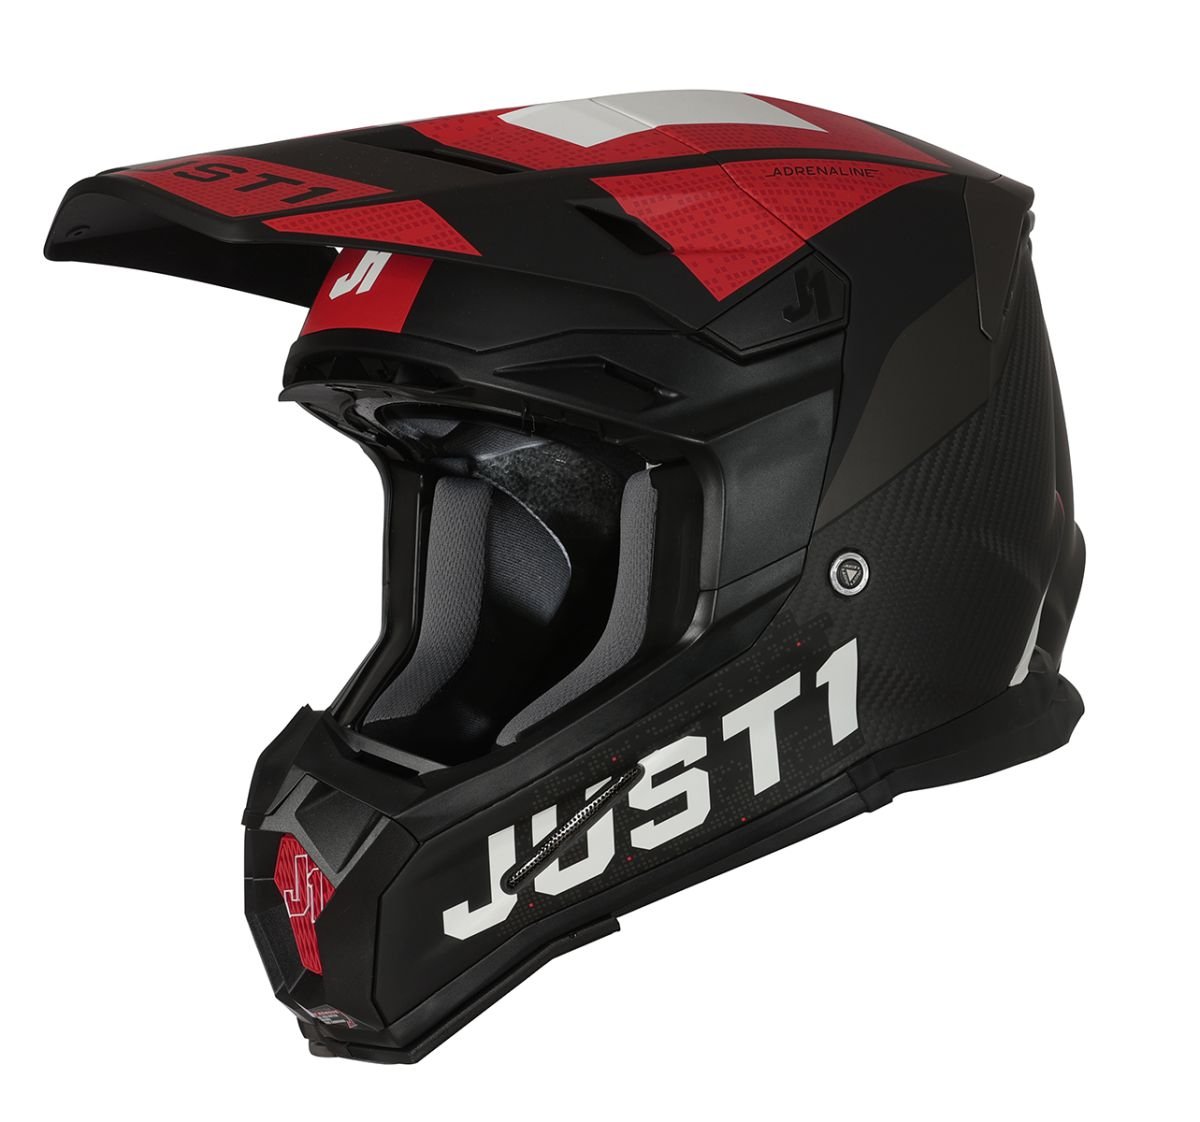 Image of EU Just1 Helmet J-22 Adrenaline Rouge Blanc Carbon Mat Casque Cross Taille L